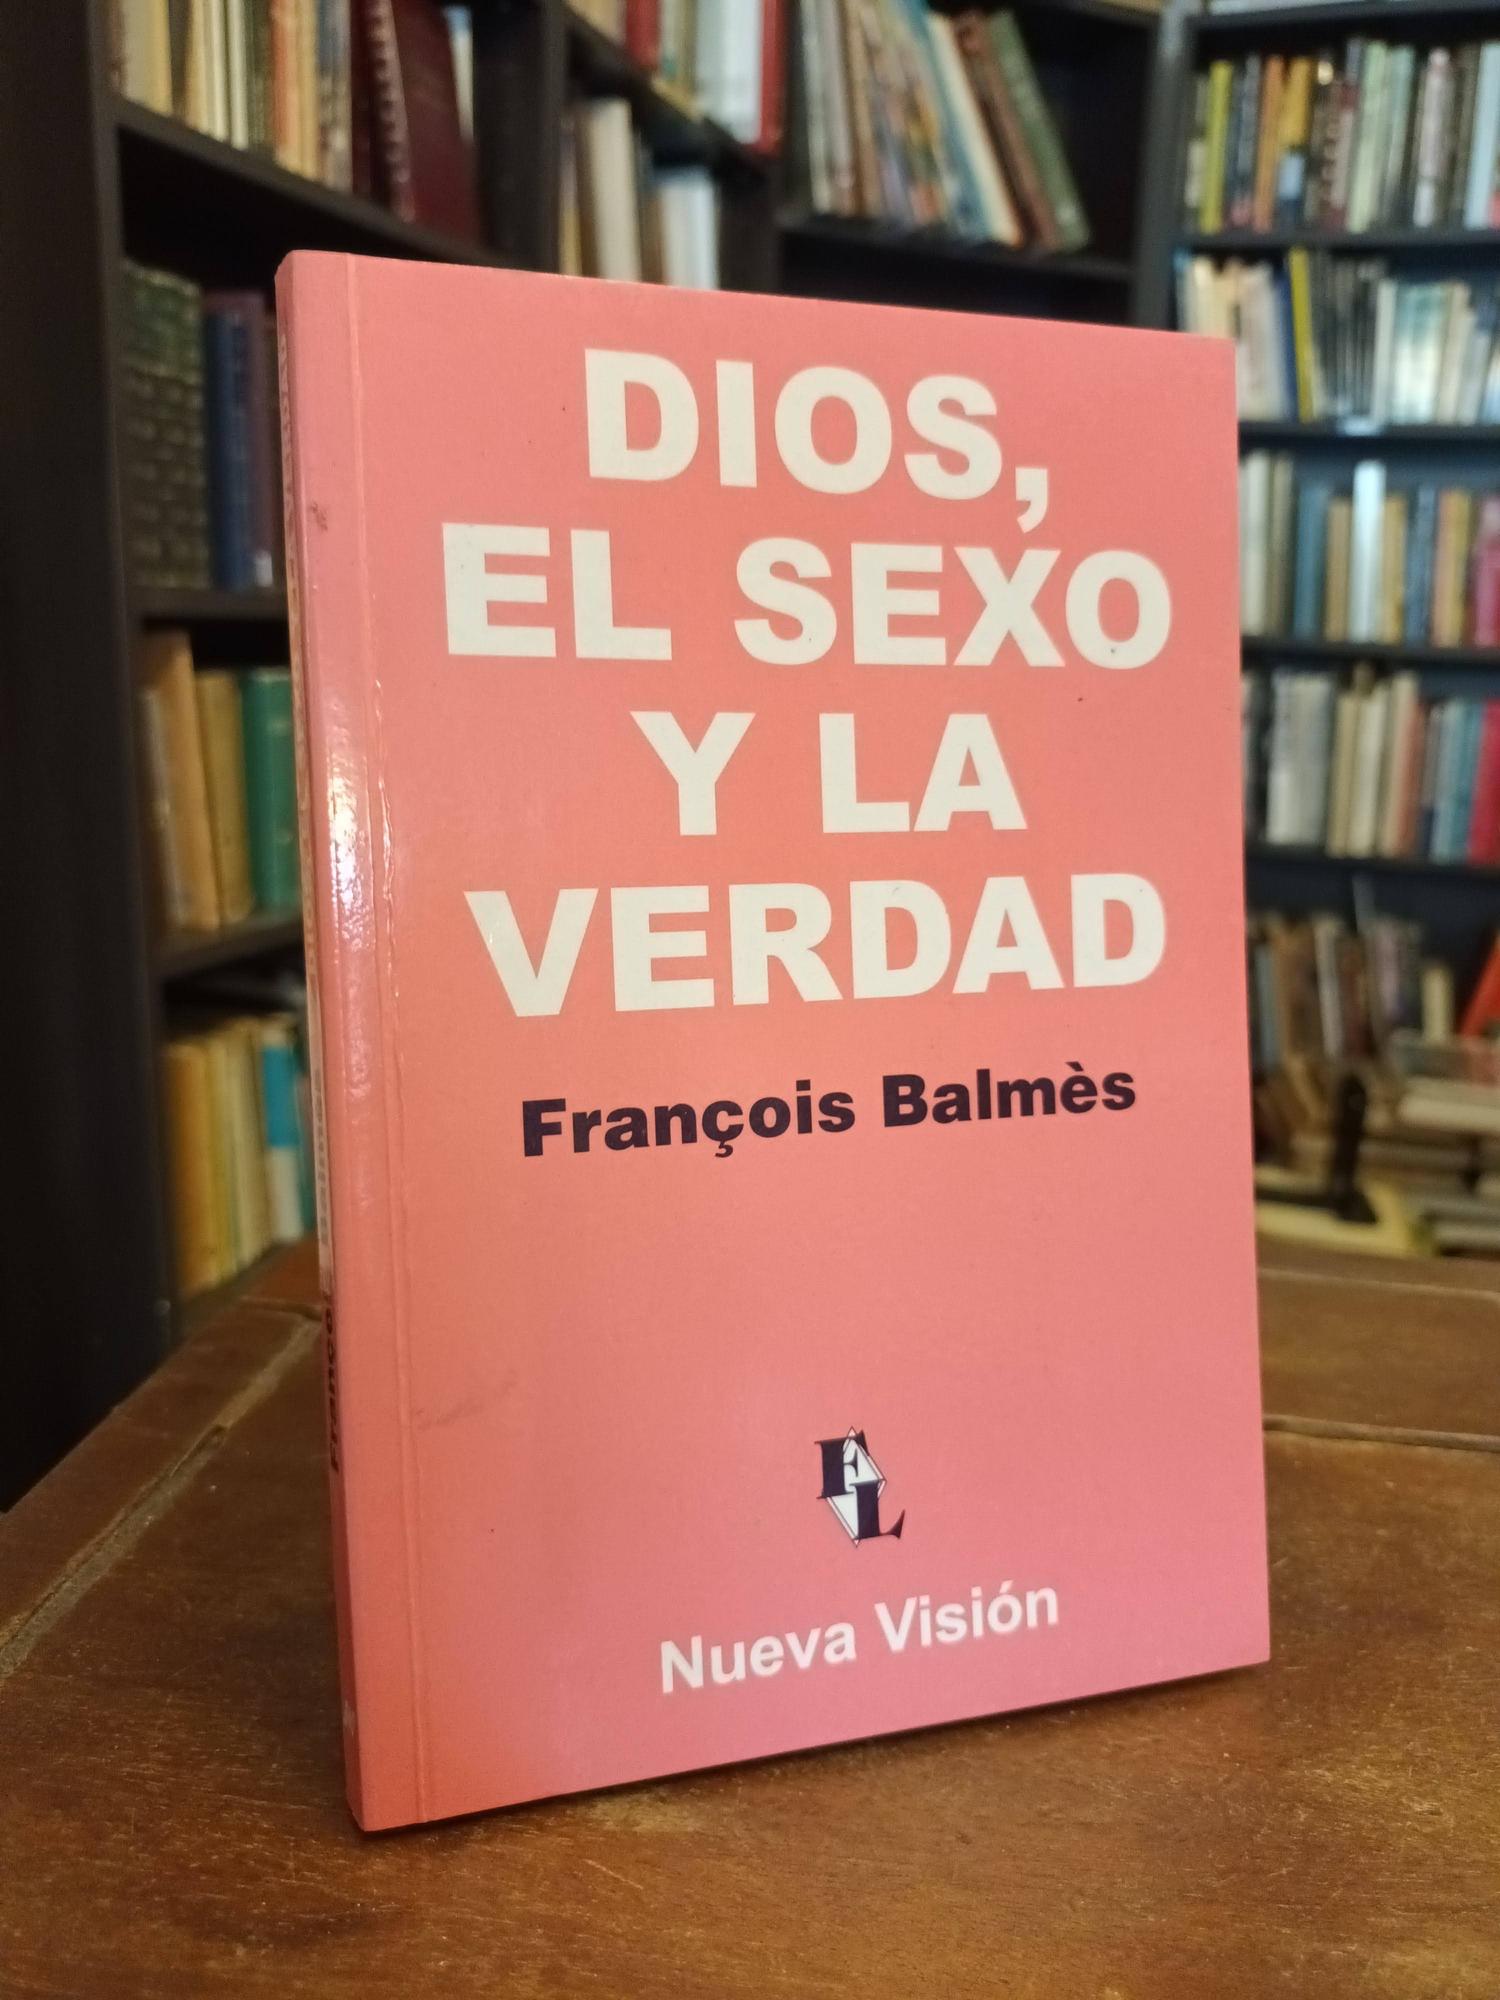 Dios, el sexo y la verdad - François Balmes